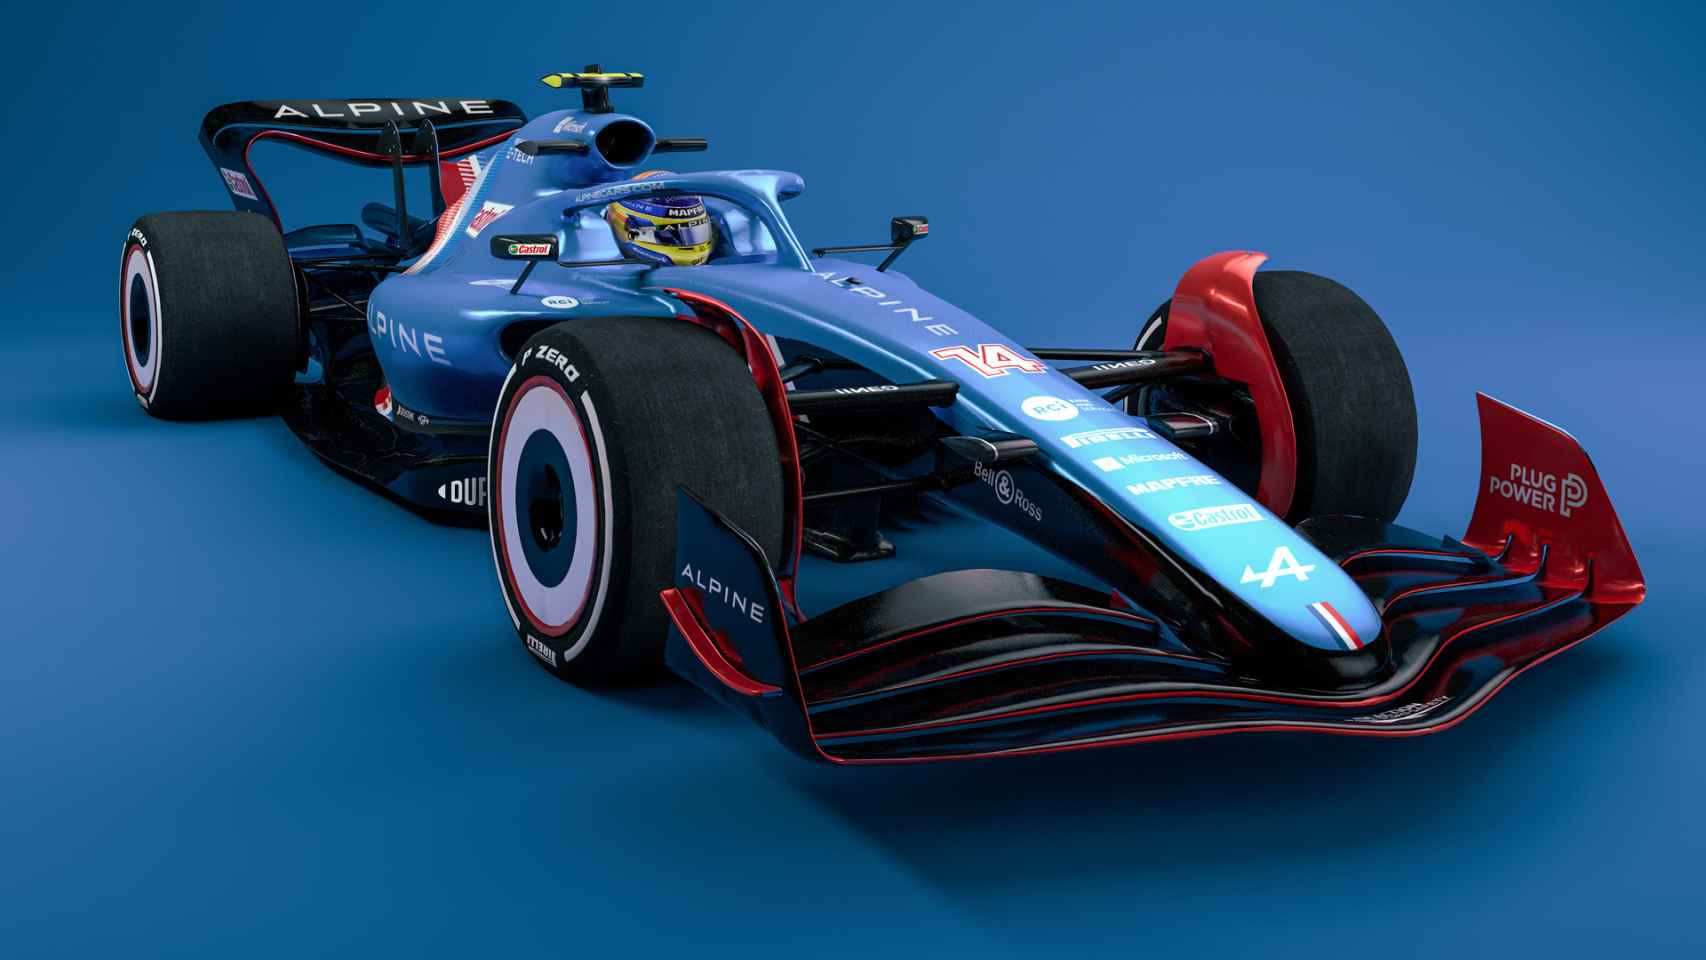 El prototipo de monoplaza que correrá la Fórmula 1 el próximo año, diseñado con inteligencia artificial y pintado con los colores del Alpine de Fernando Alonso.